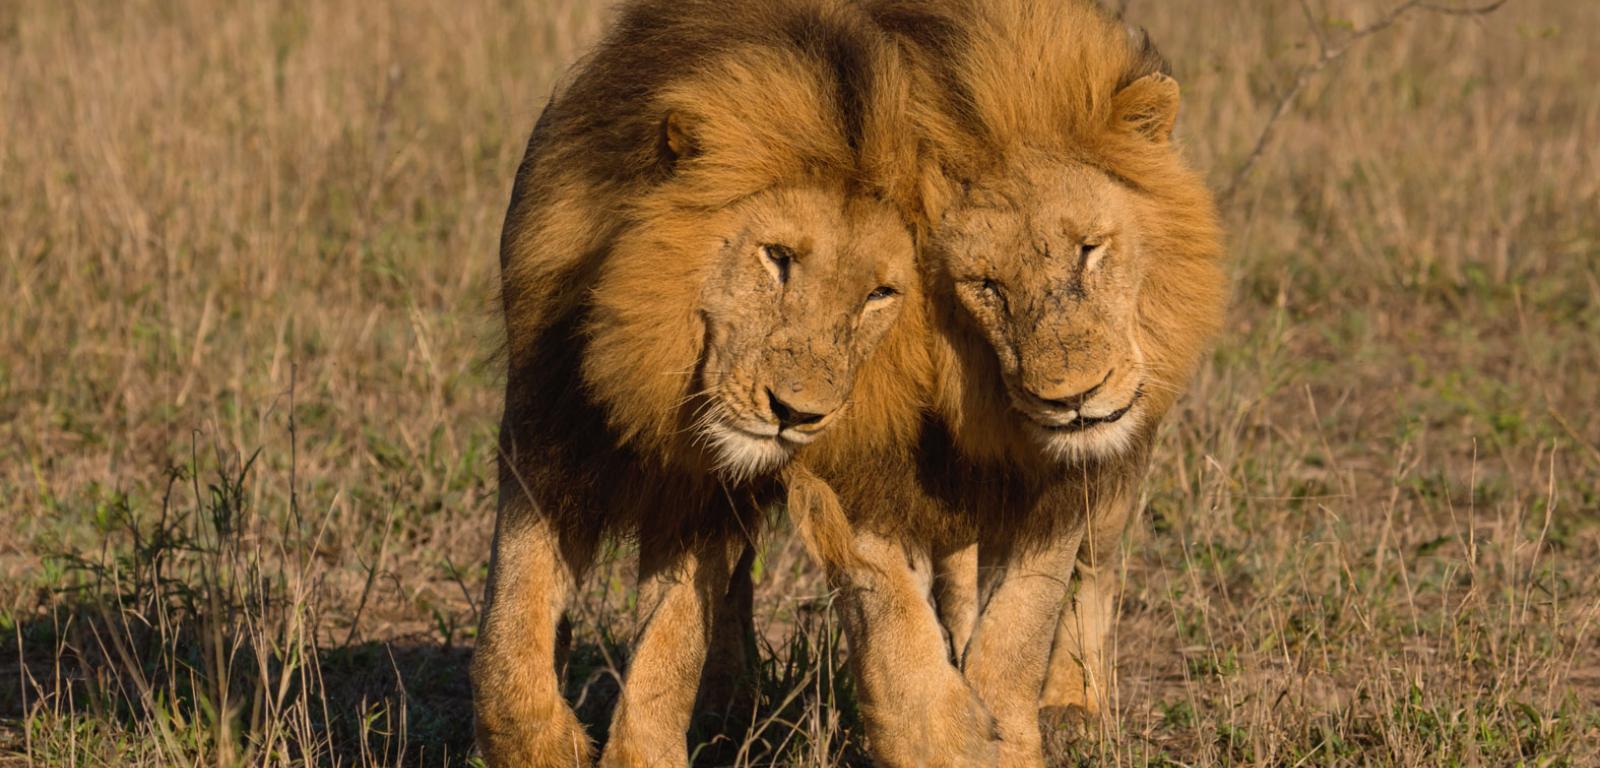 Homoseksualizm u lwów dotyczy obu płci.